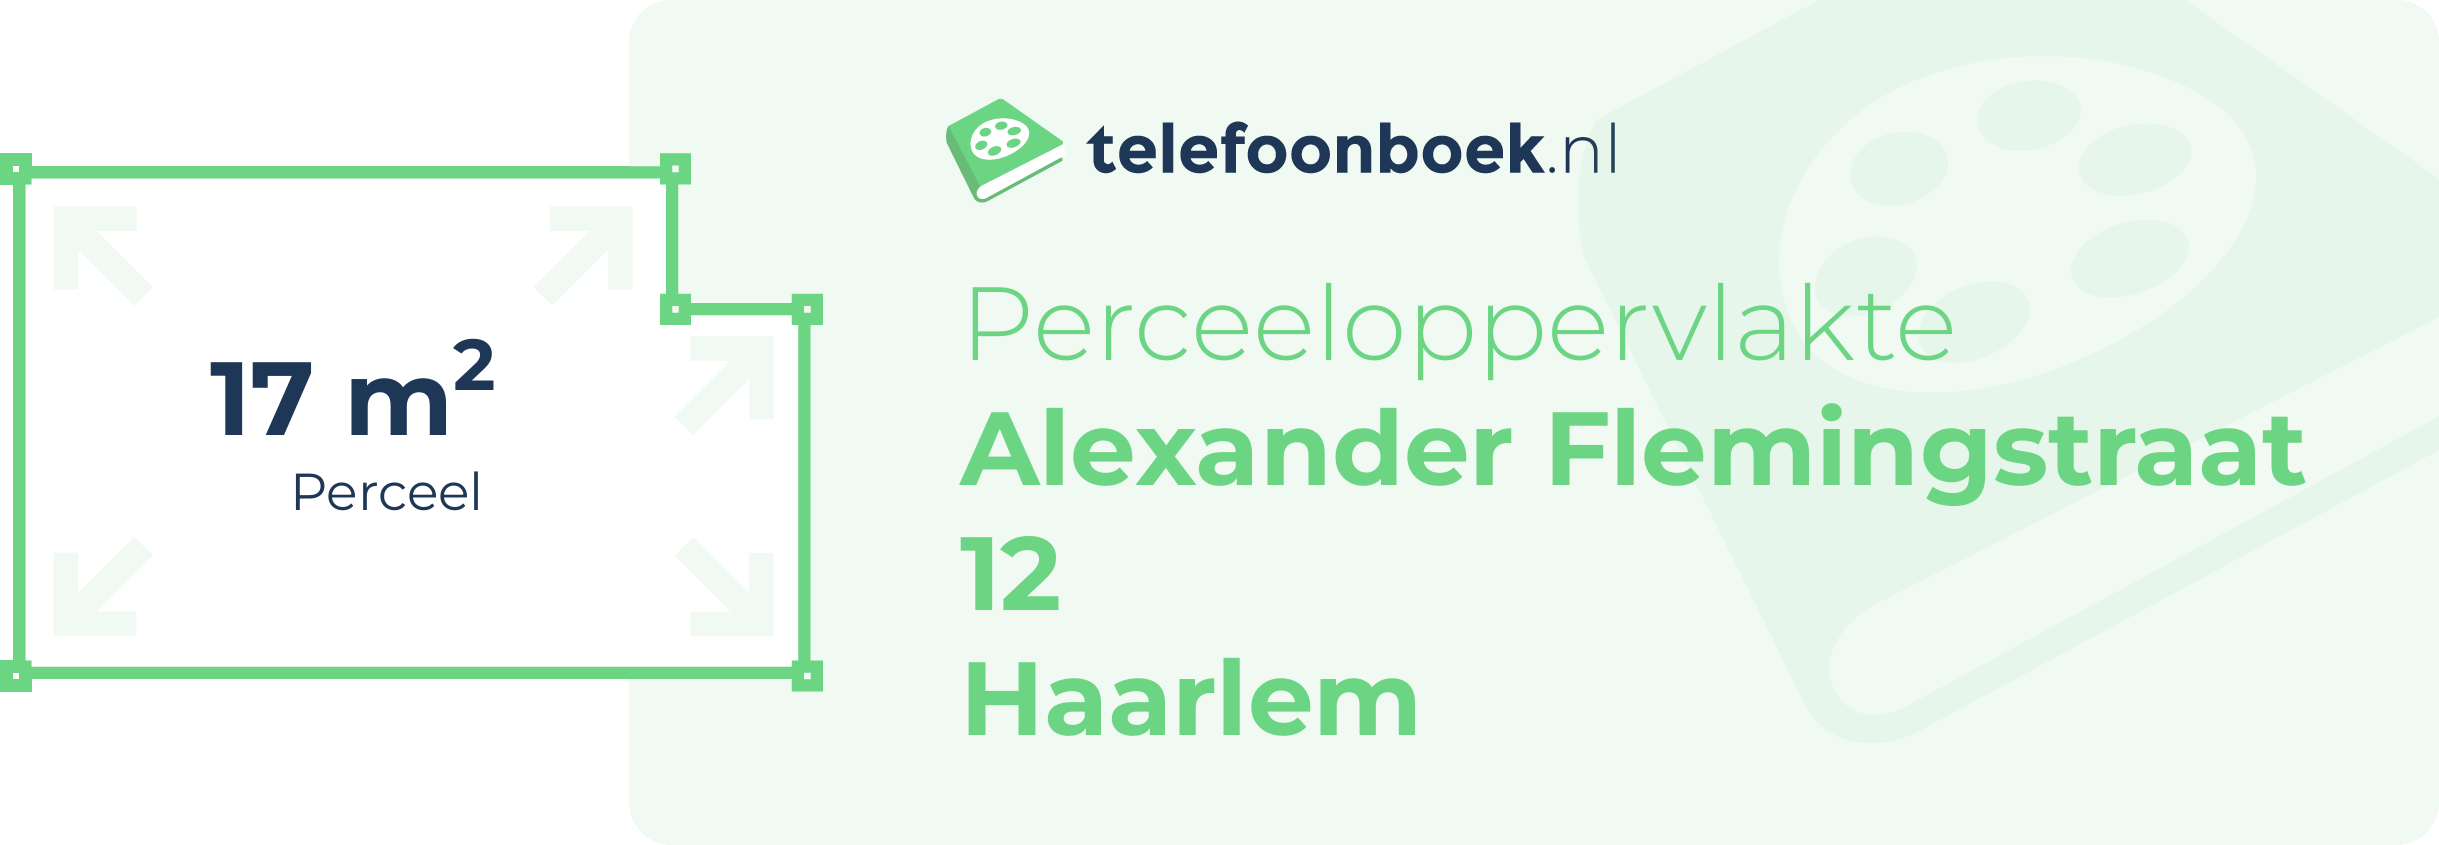 Perceeloppervlakte Alexander Flemingstraat 12 Haarlem